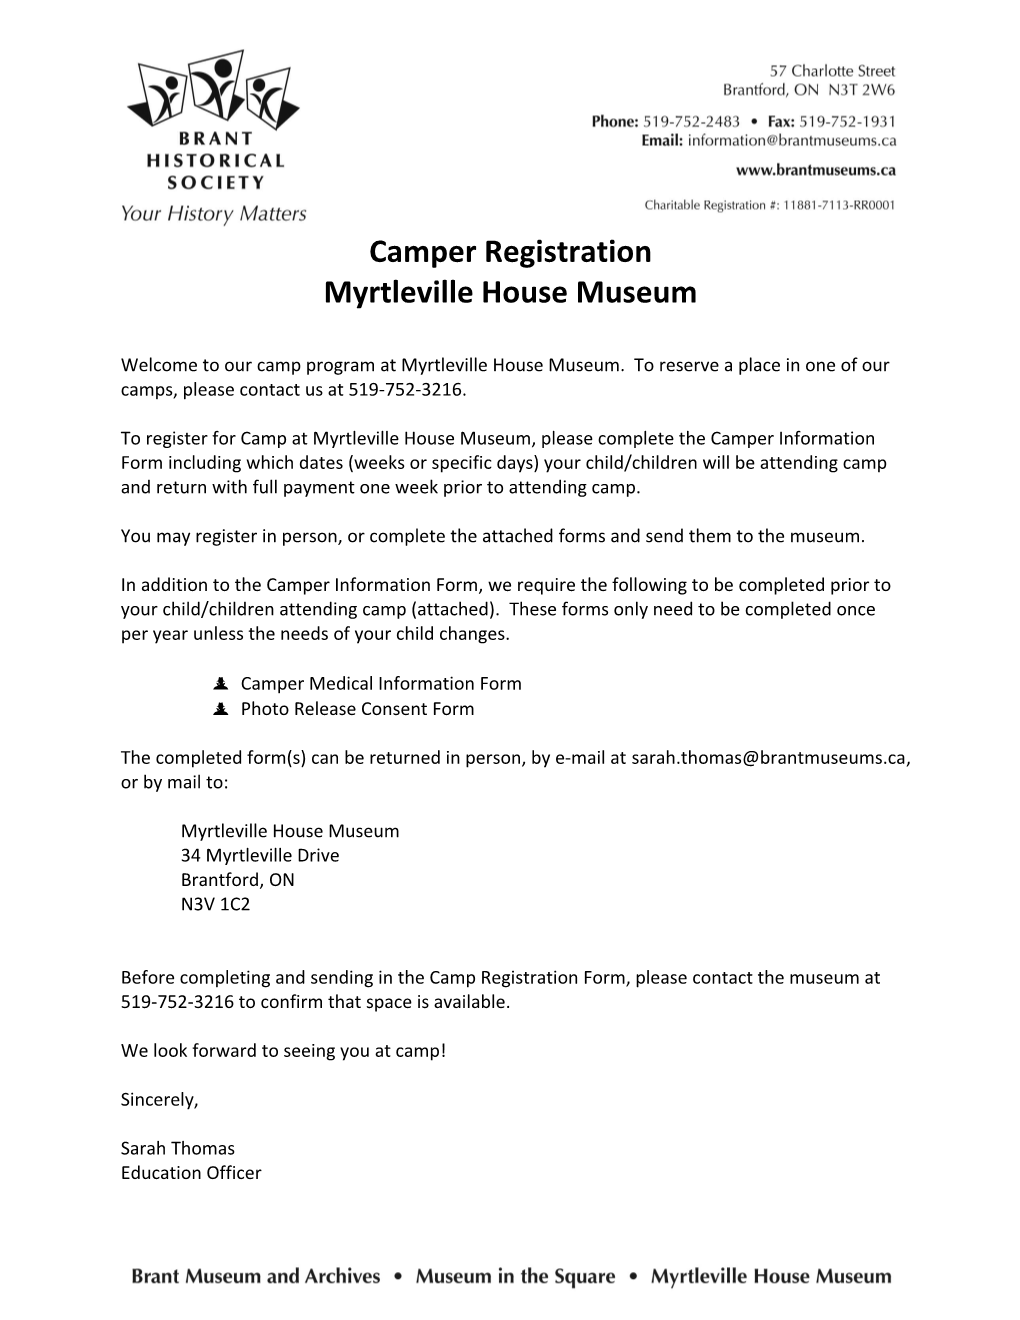 Camper Registration